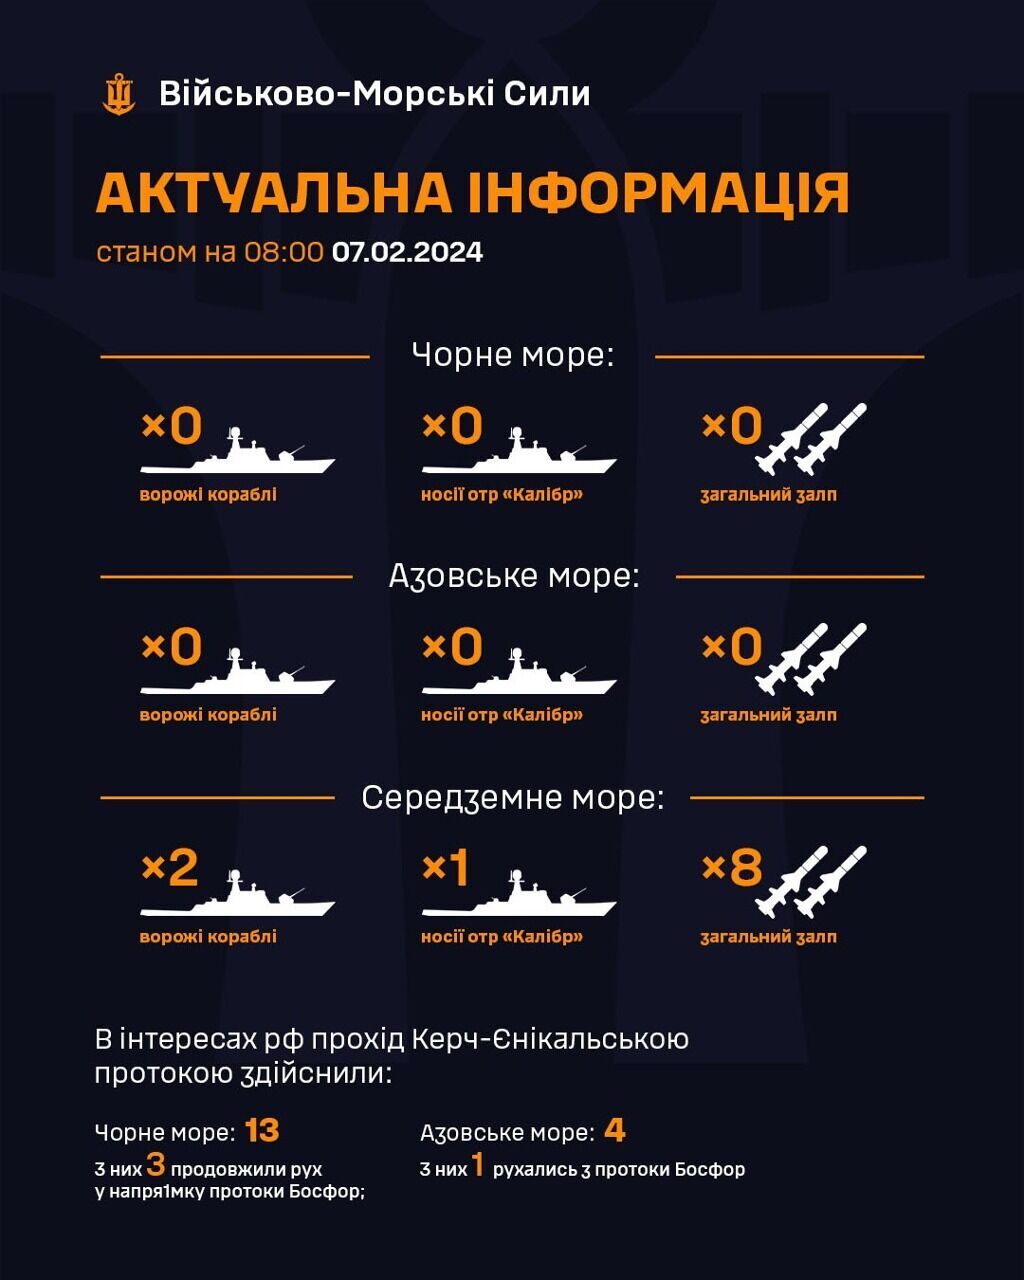 ВМС: Росія прибрала ракетоносії з Чорного і Азовського морів

